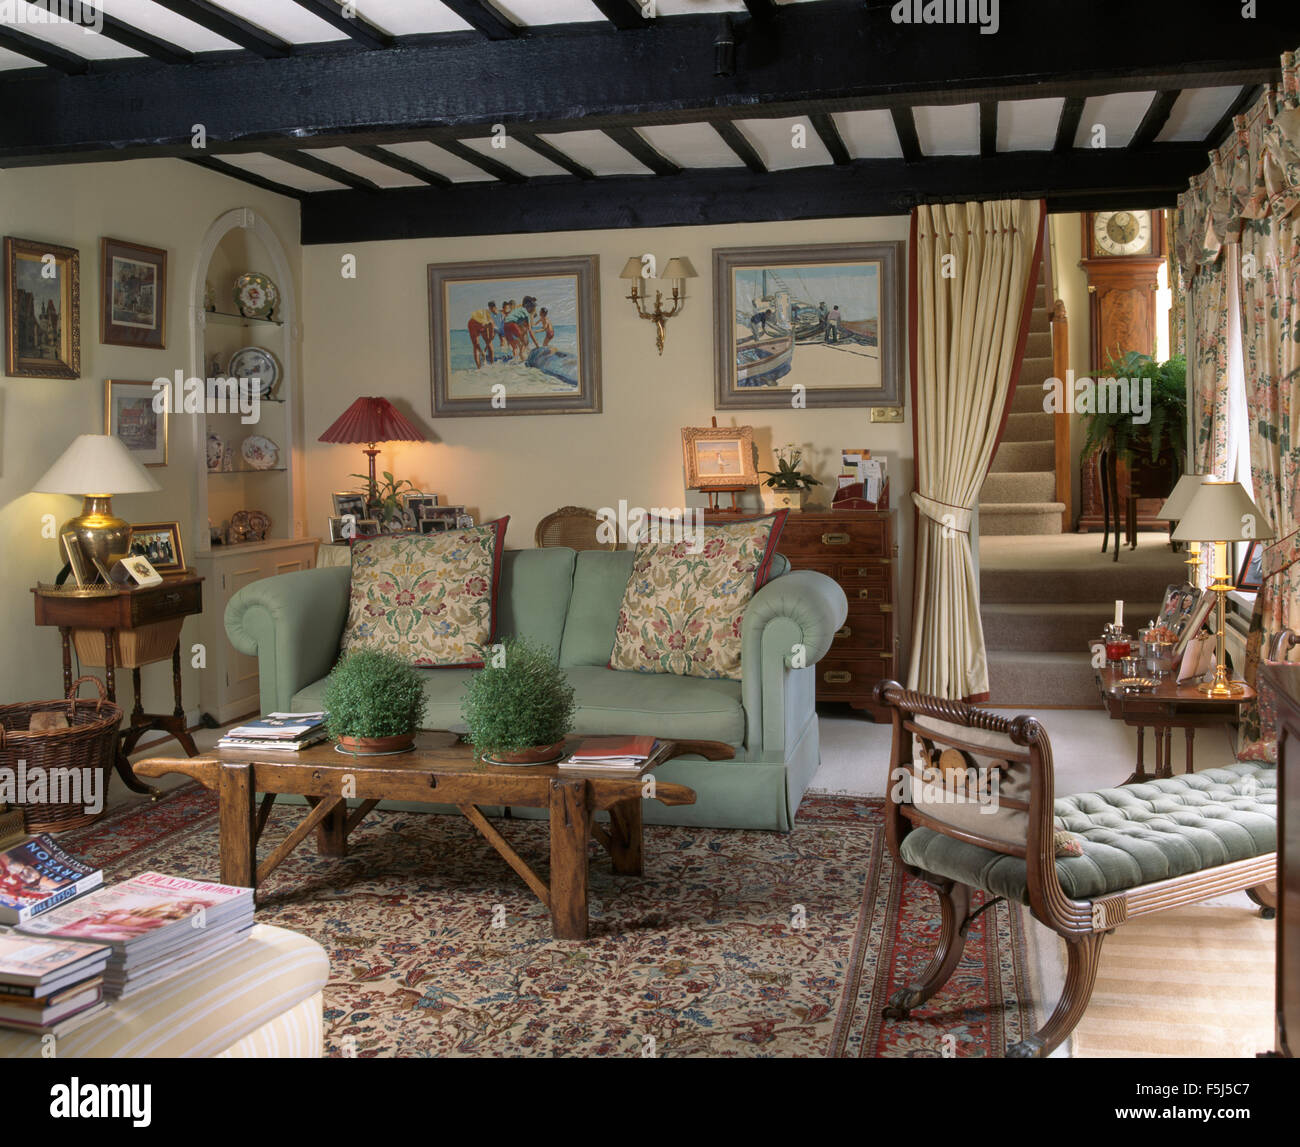 Blasses Grün Sofa und eine ungewöhnliche rustikal Couchtisch aus Holz mit  Griffen in einer neunziger Jahre Ferienhaus Wohnzimmer Stockfotografie -  Alamy